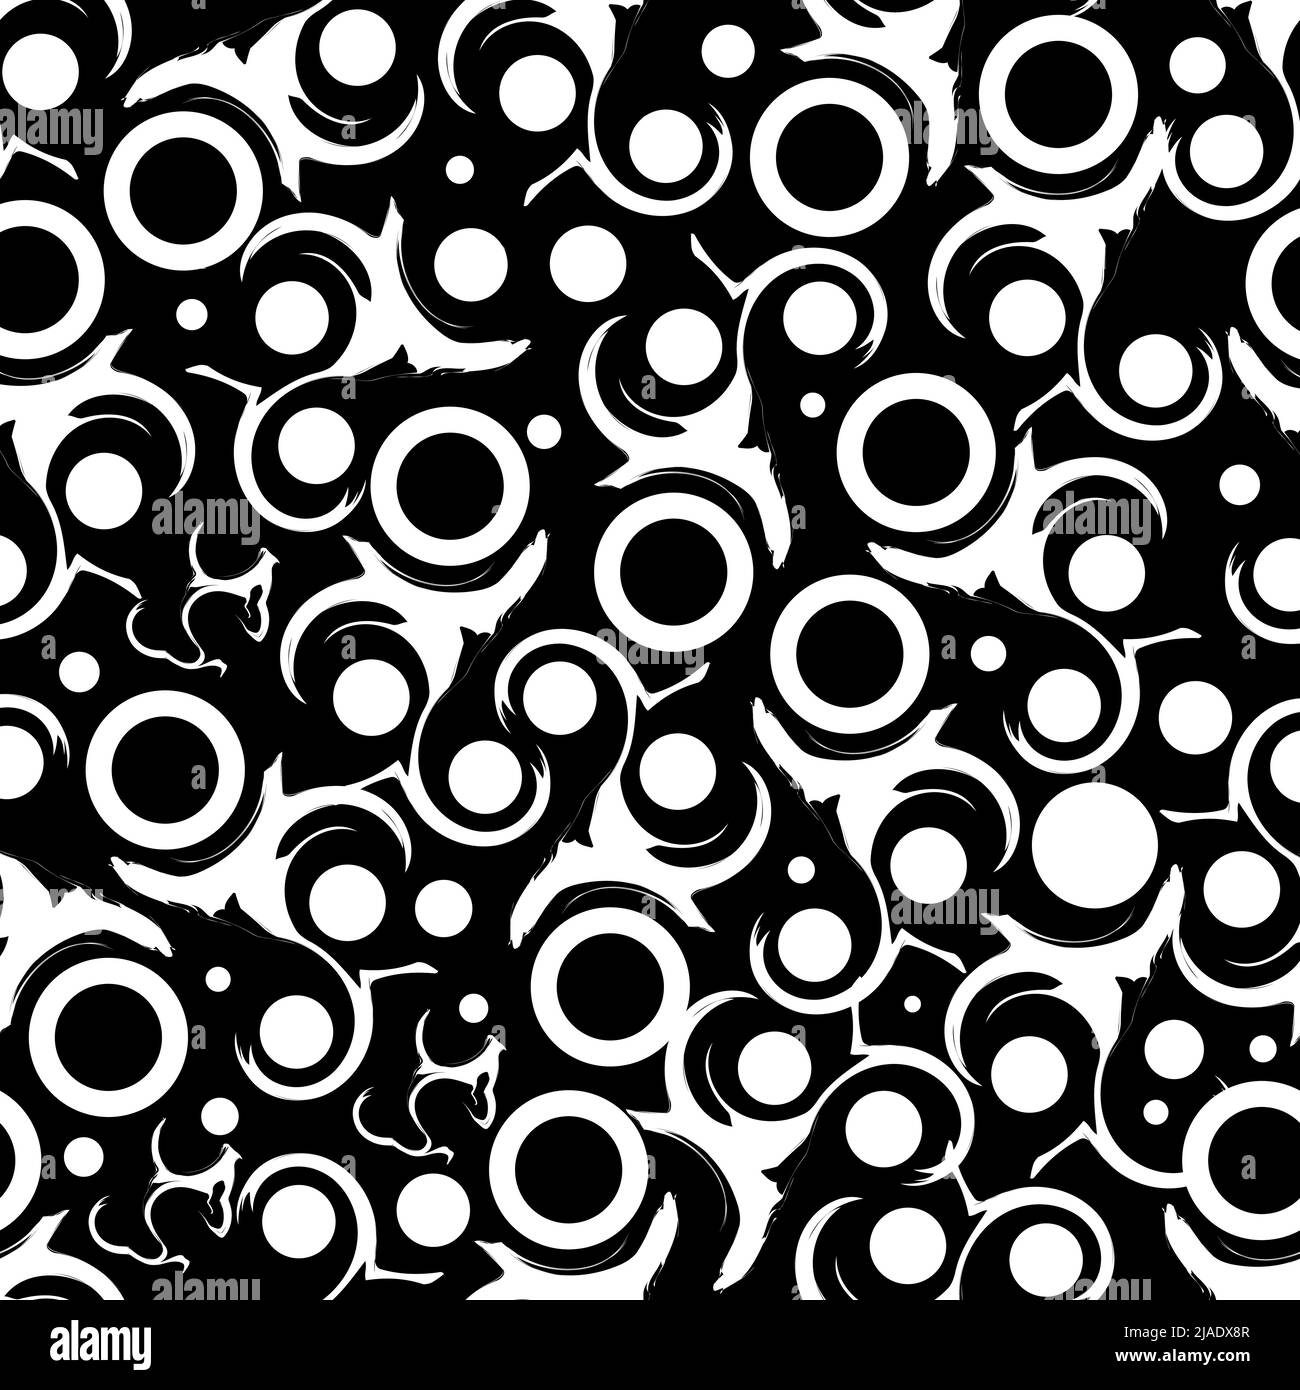 Schwarzer Hintergrund Mit Nahtlosem Muster. Design für Wanddekoration, Postkarte, Poster, Broschüre, Hemd, Usw. Stock Vektor